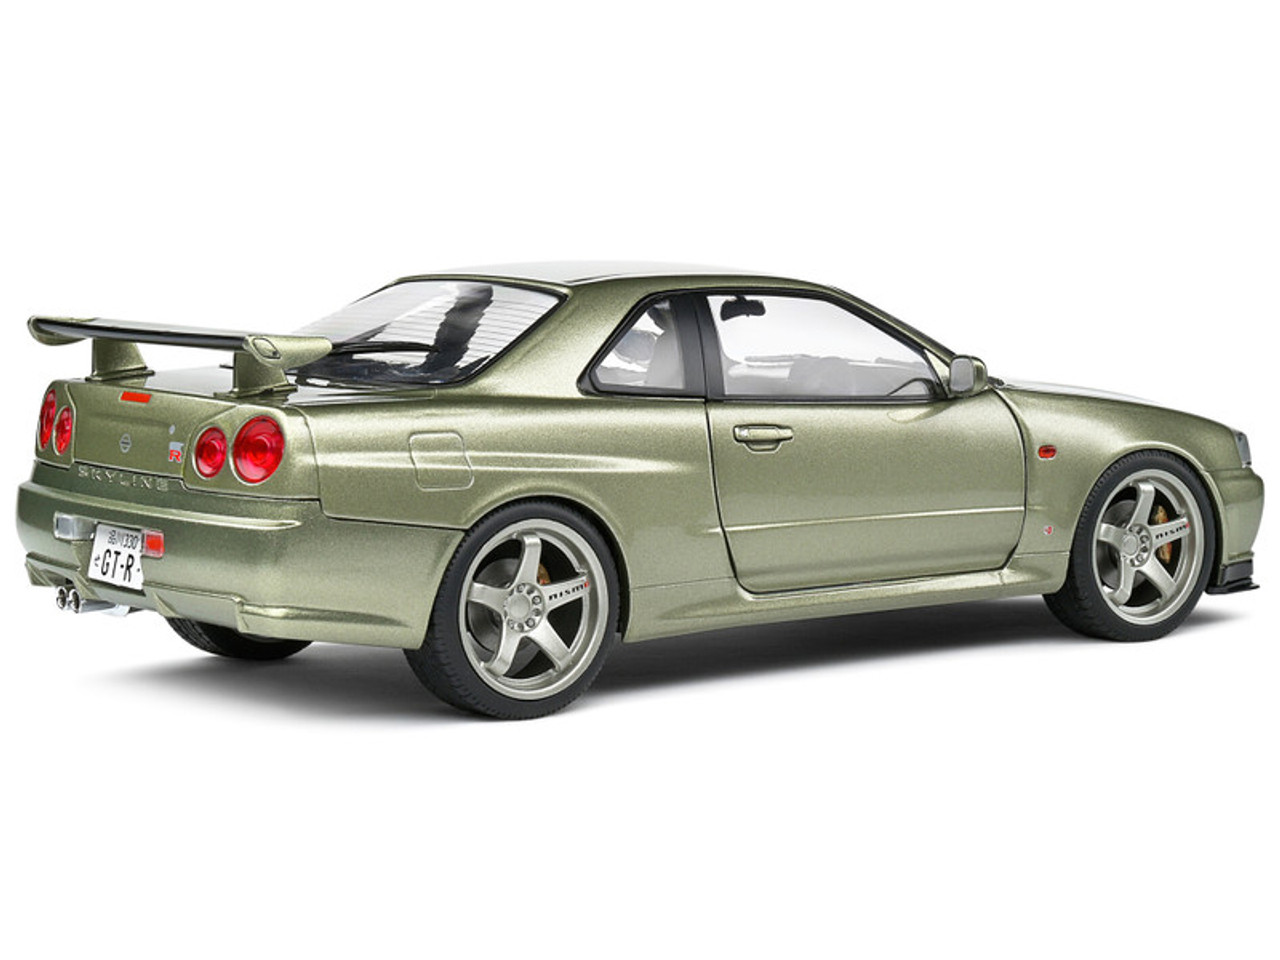 1/18 Solido 1999 Nissan Skyline GT-R (R34) RHD (Light Green Metallic) Car Model